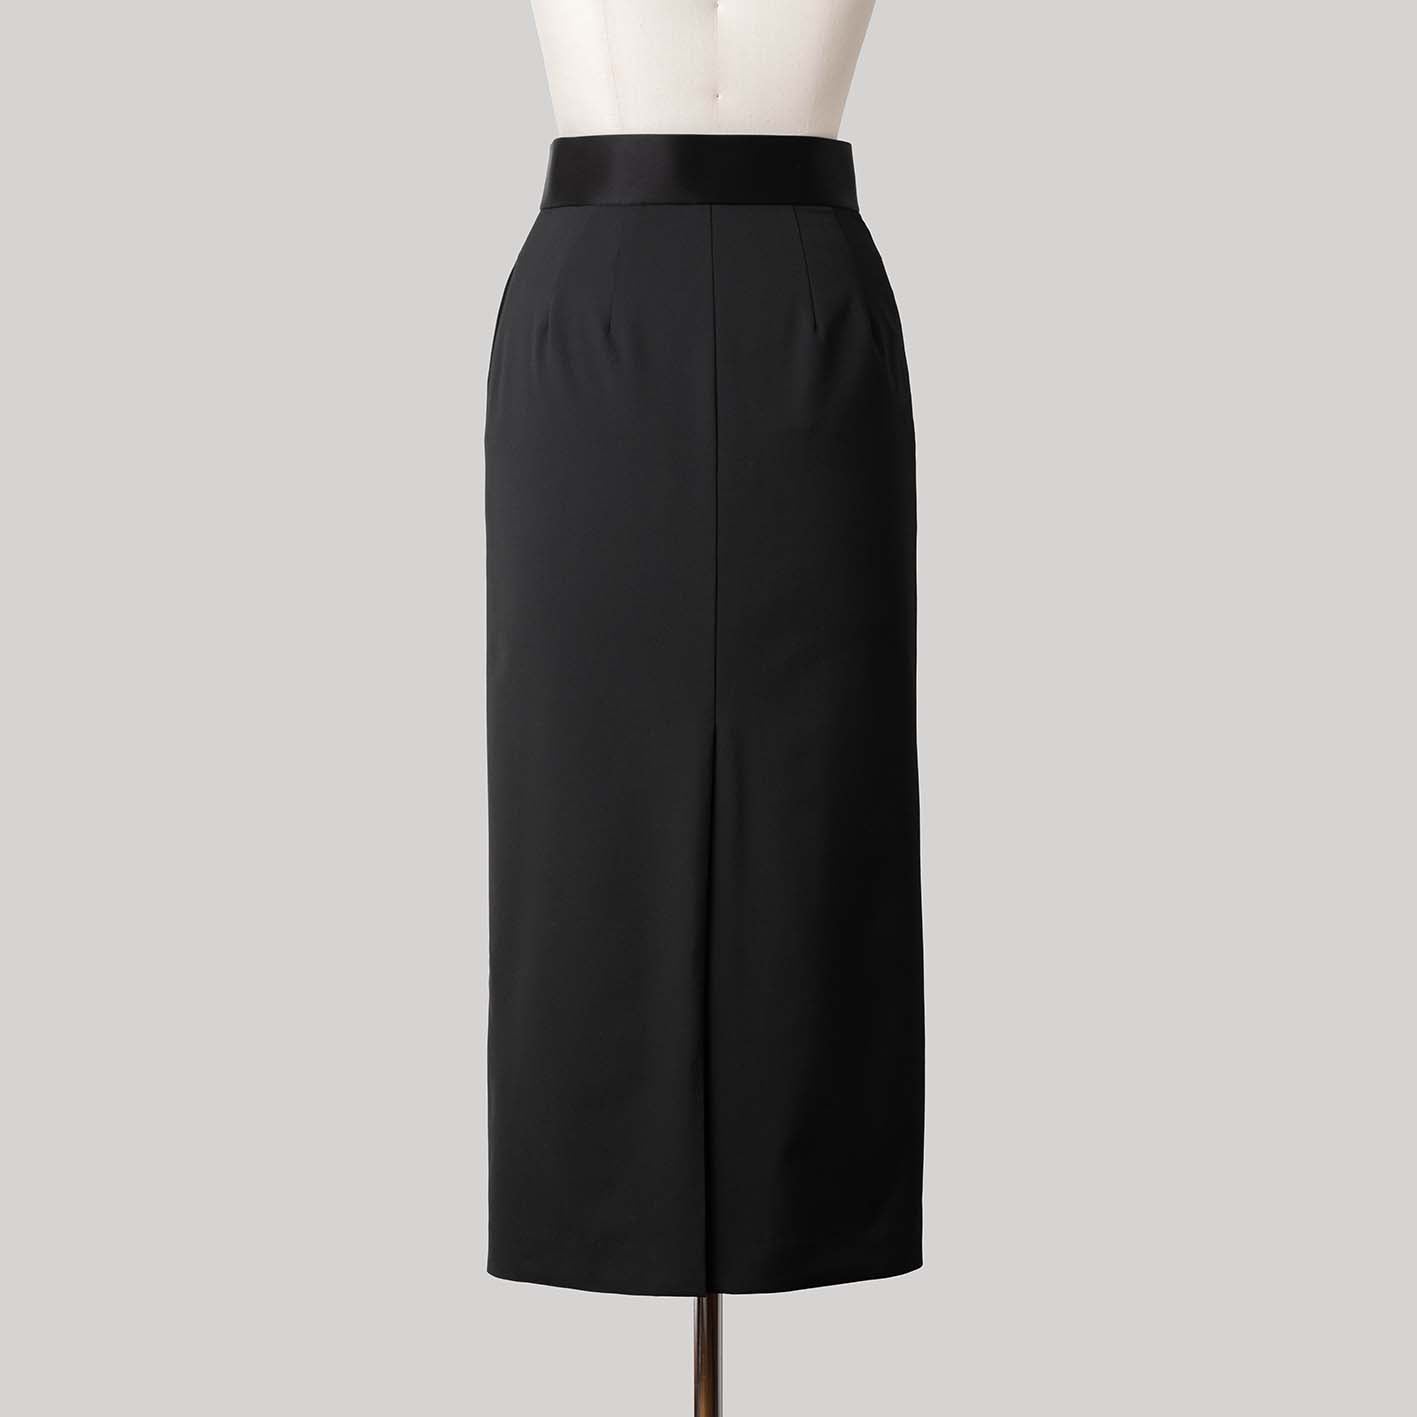 High waist tight skirt